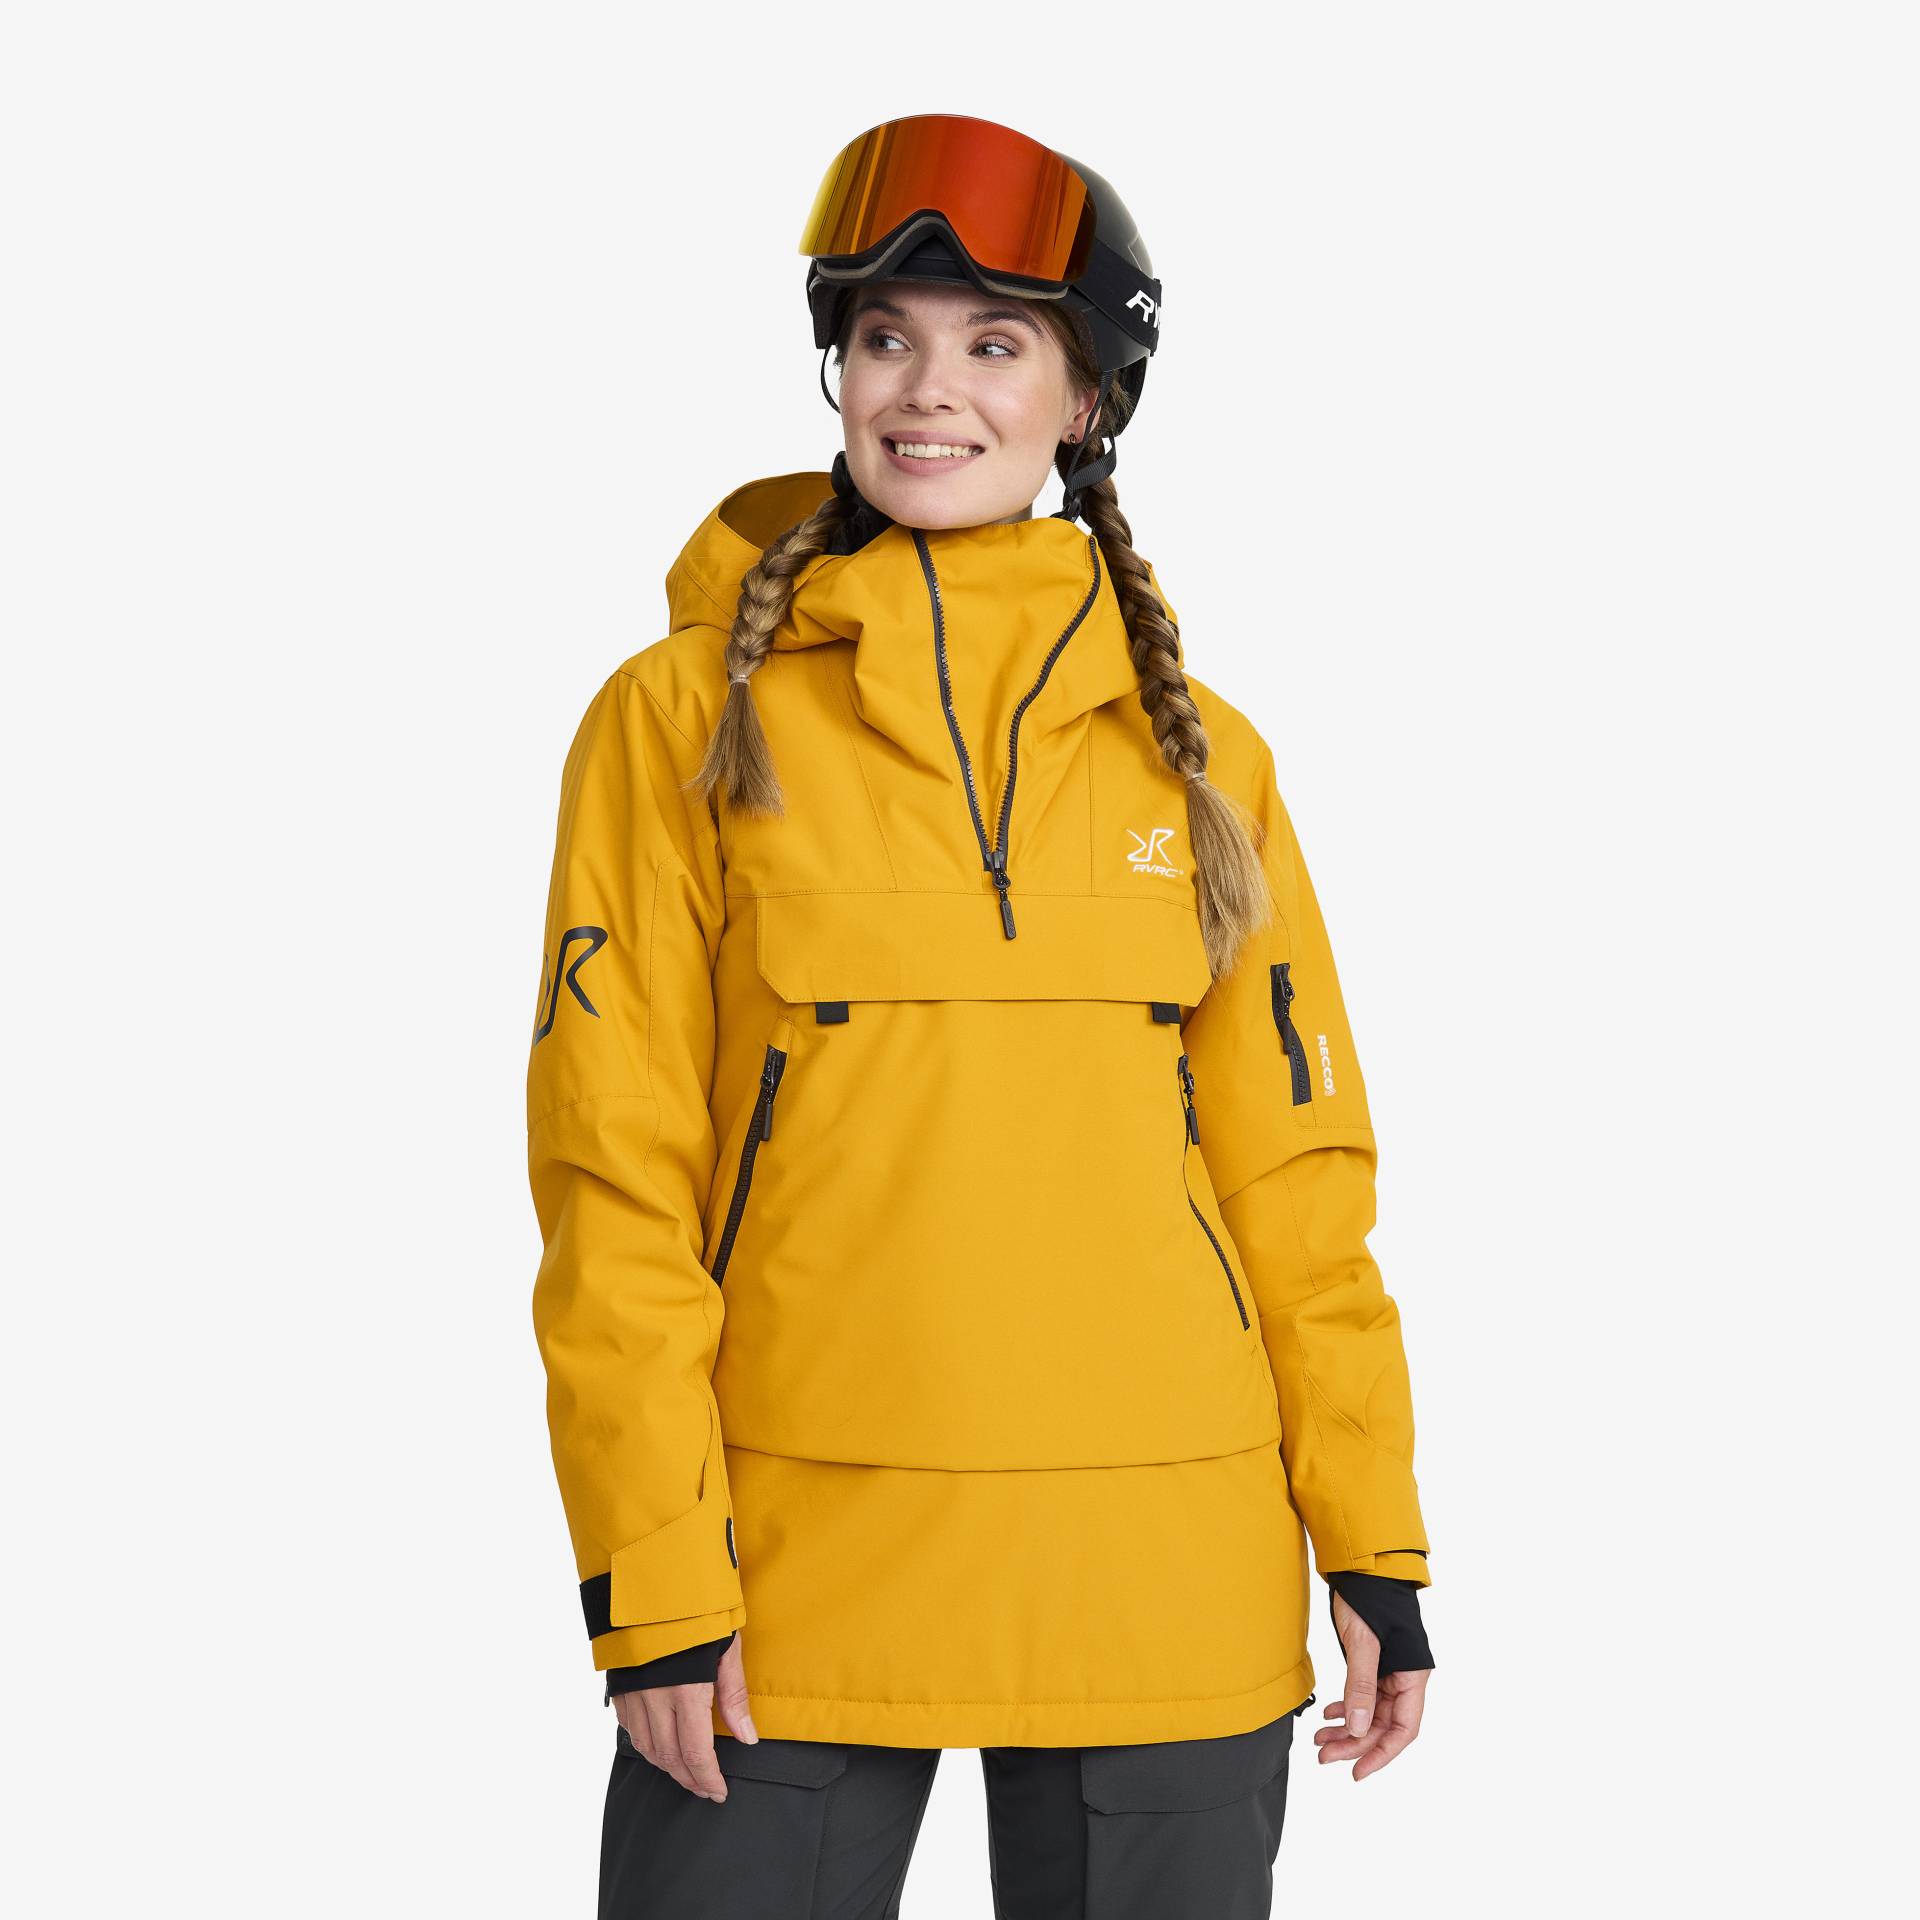 Halo 2L Insulated Ski Anorak Damen Golden Yellow, Größe:S - Skijacken von RevolutionRace